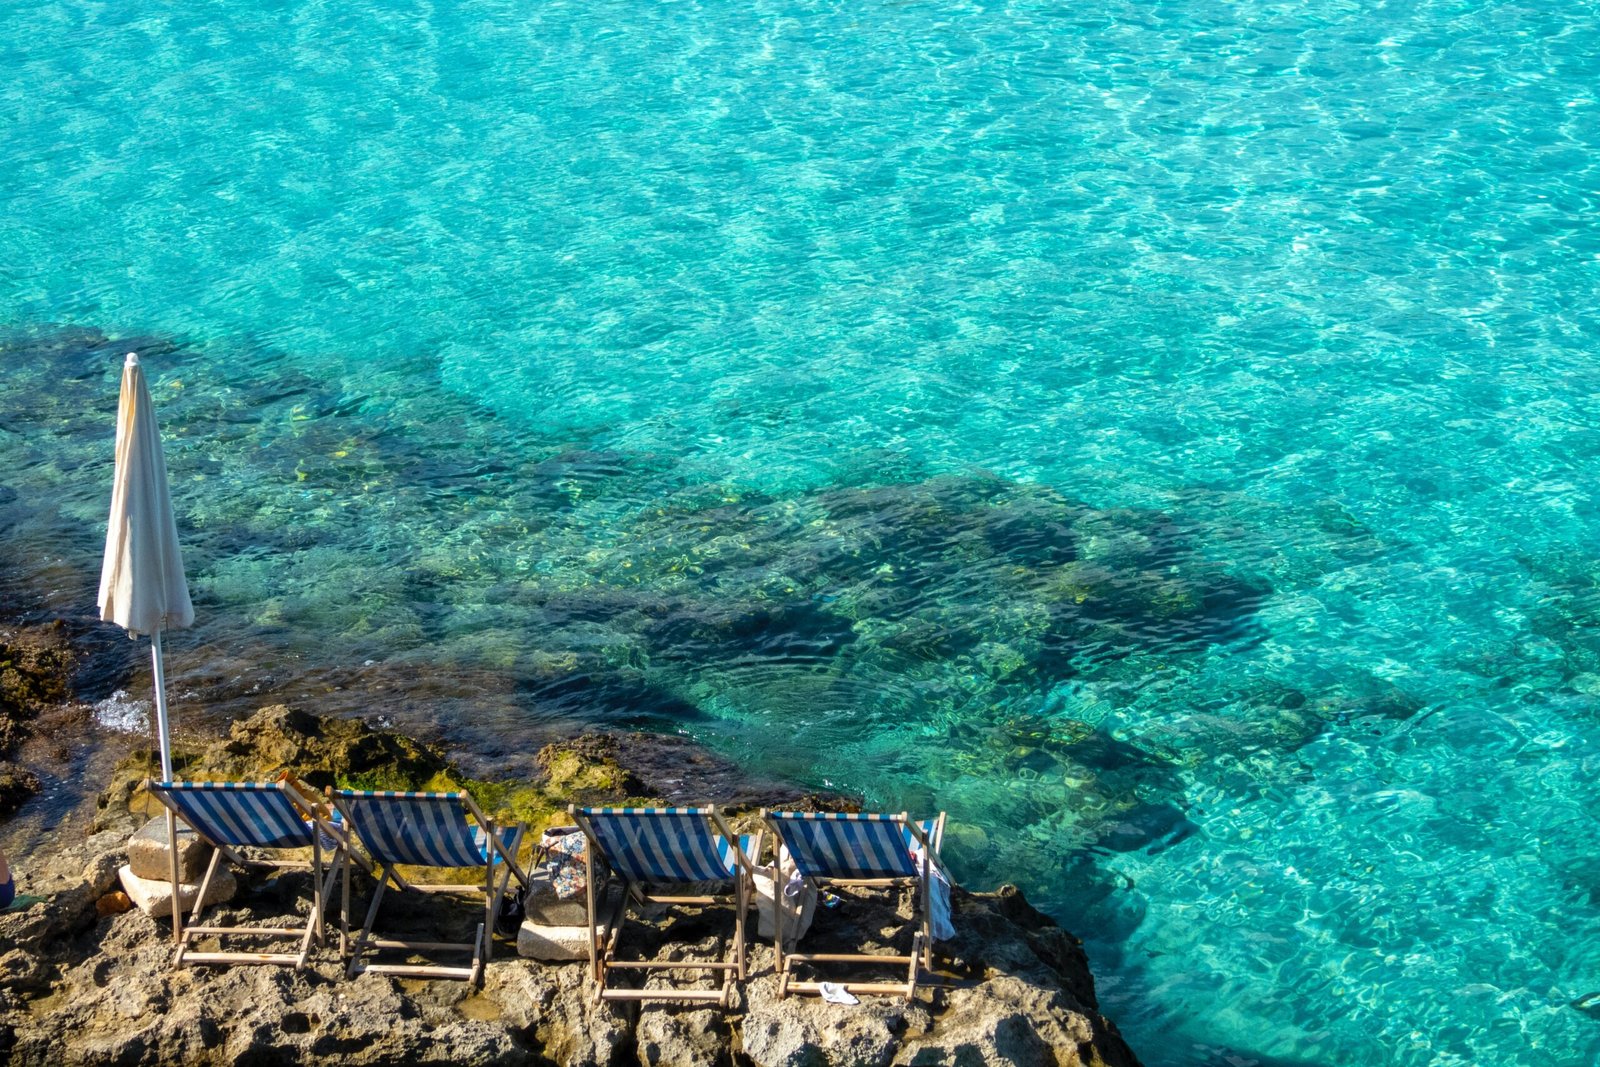 Best Beaches In Malta